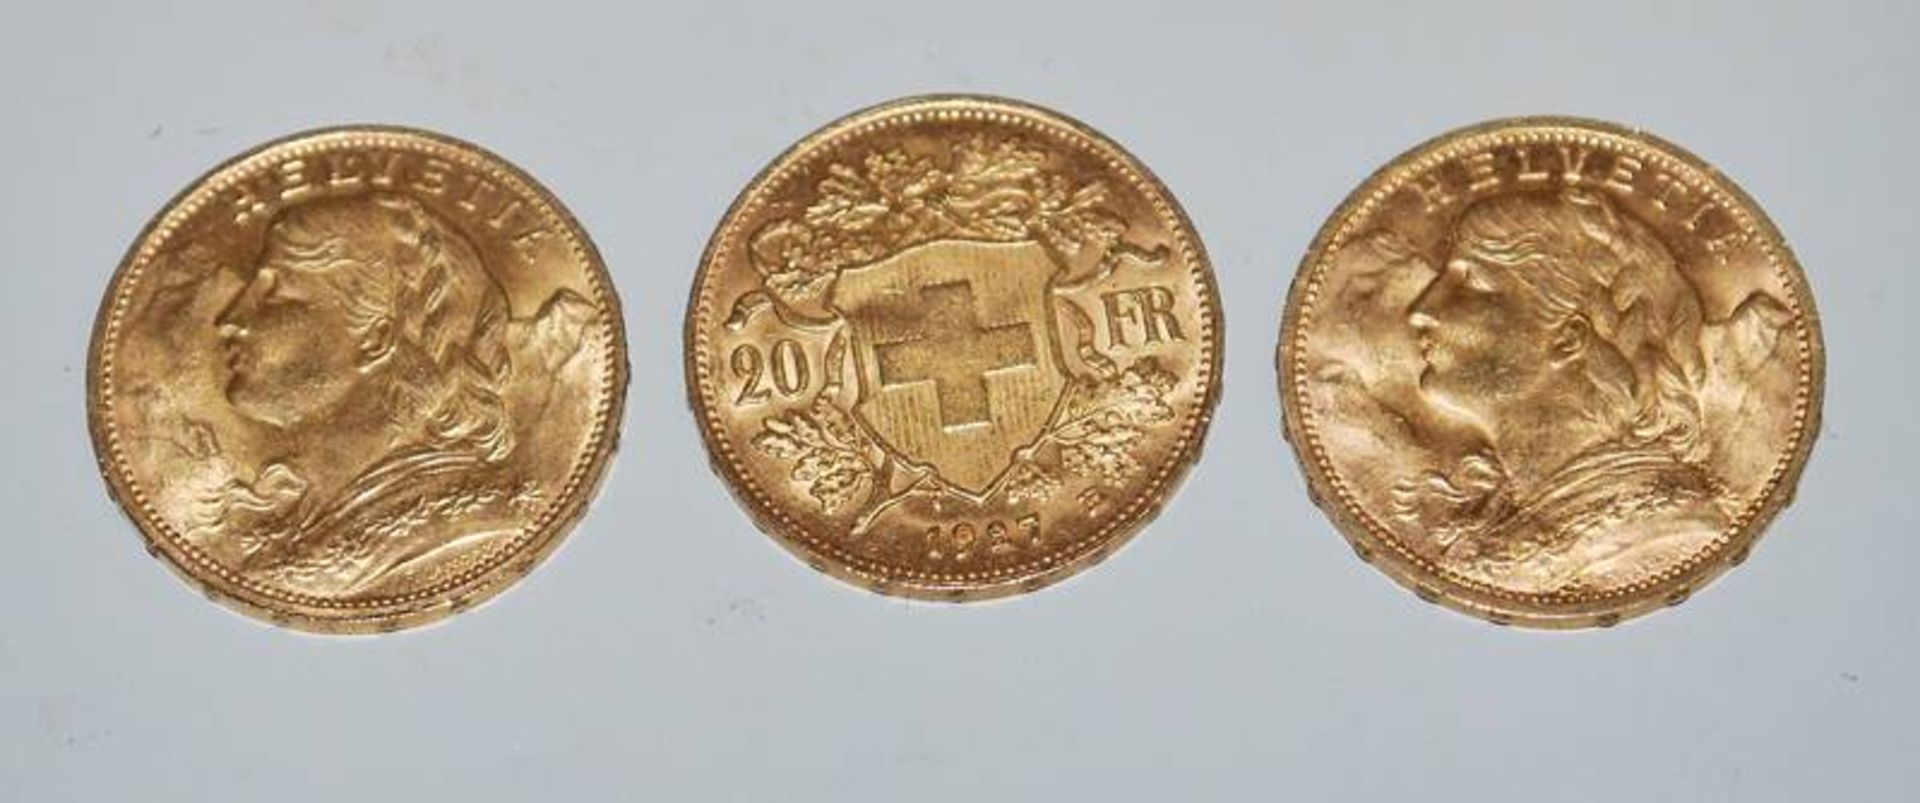 Drei Goldmünzen "Gold Vreneli" 20 Franken Schweiz-Eidgenossenschaft 1947 B